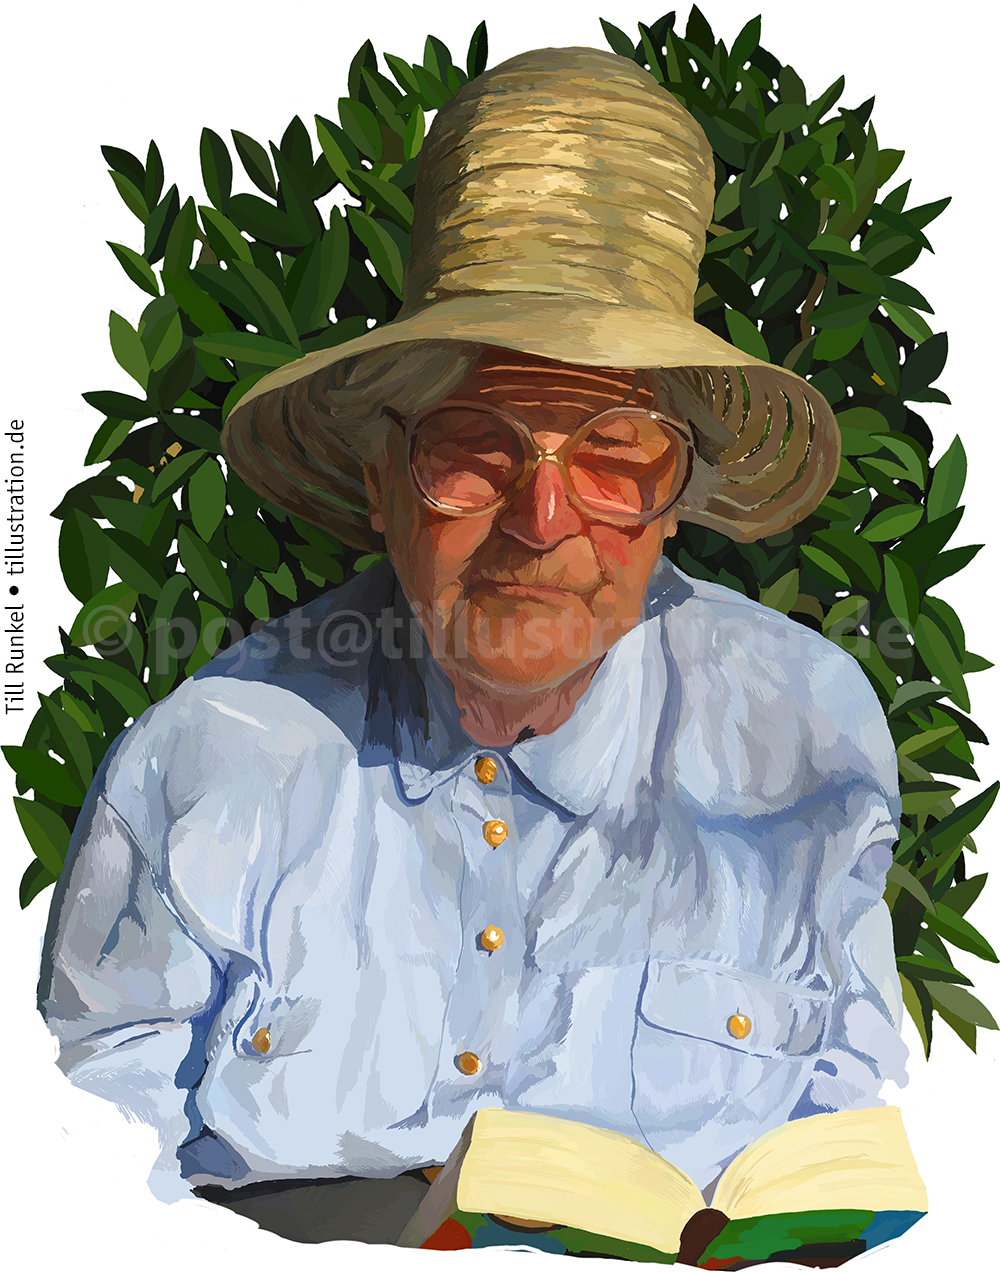 Eine realistische Portraitzeichnung meiner Großmutter